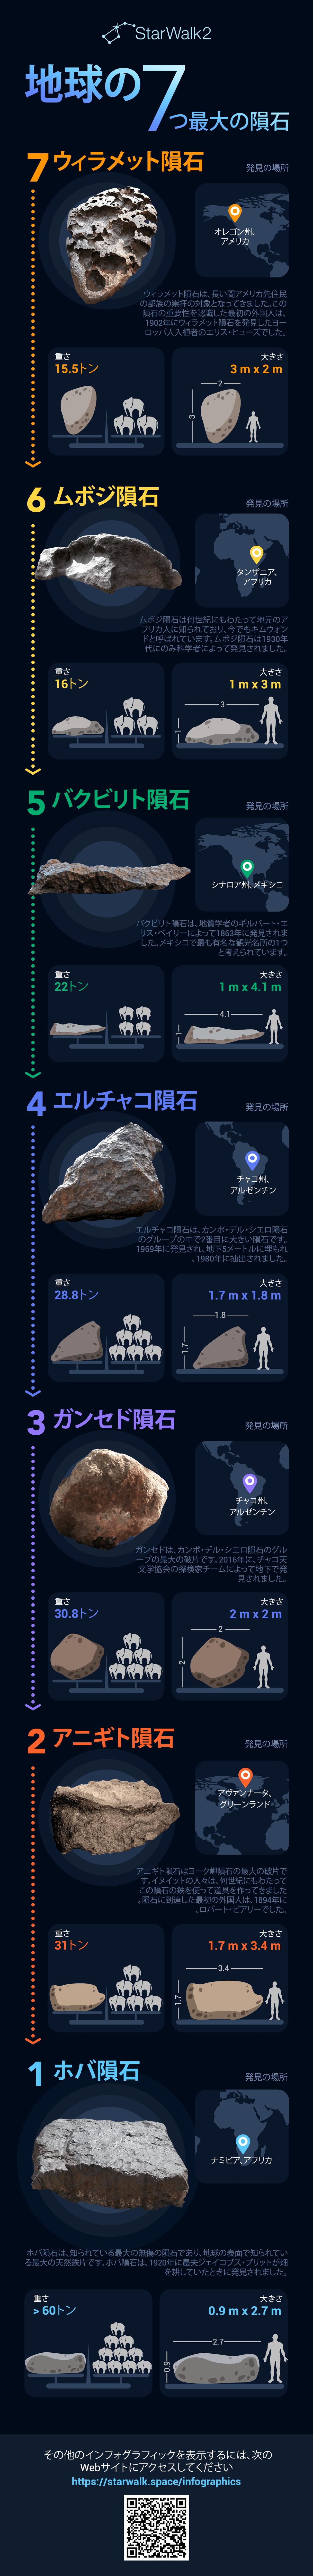 7 Largest Meteorites on Earth